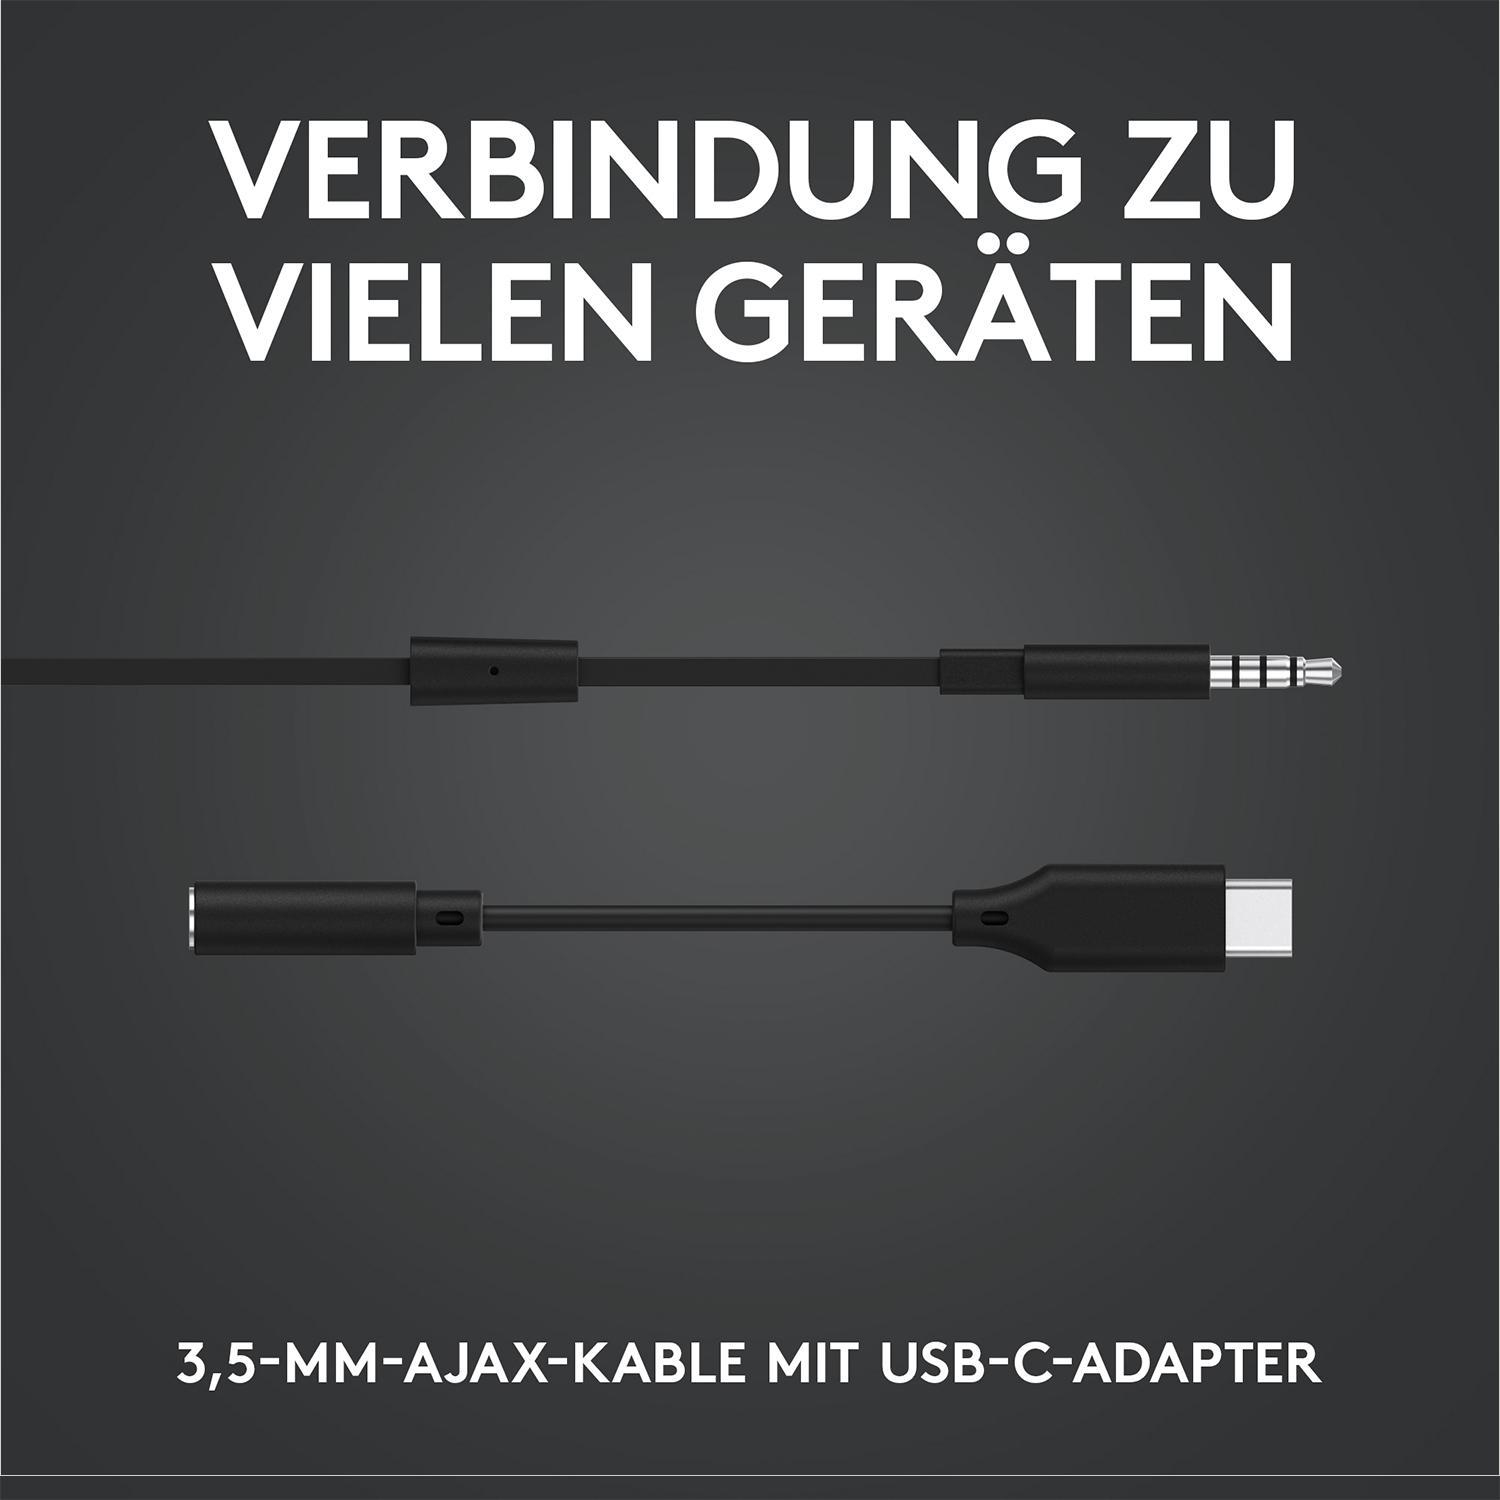 LOGITECH G333, Schwarz Headset In-ear Gaming